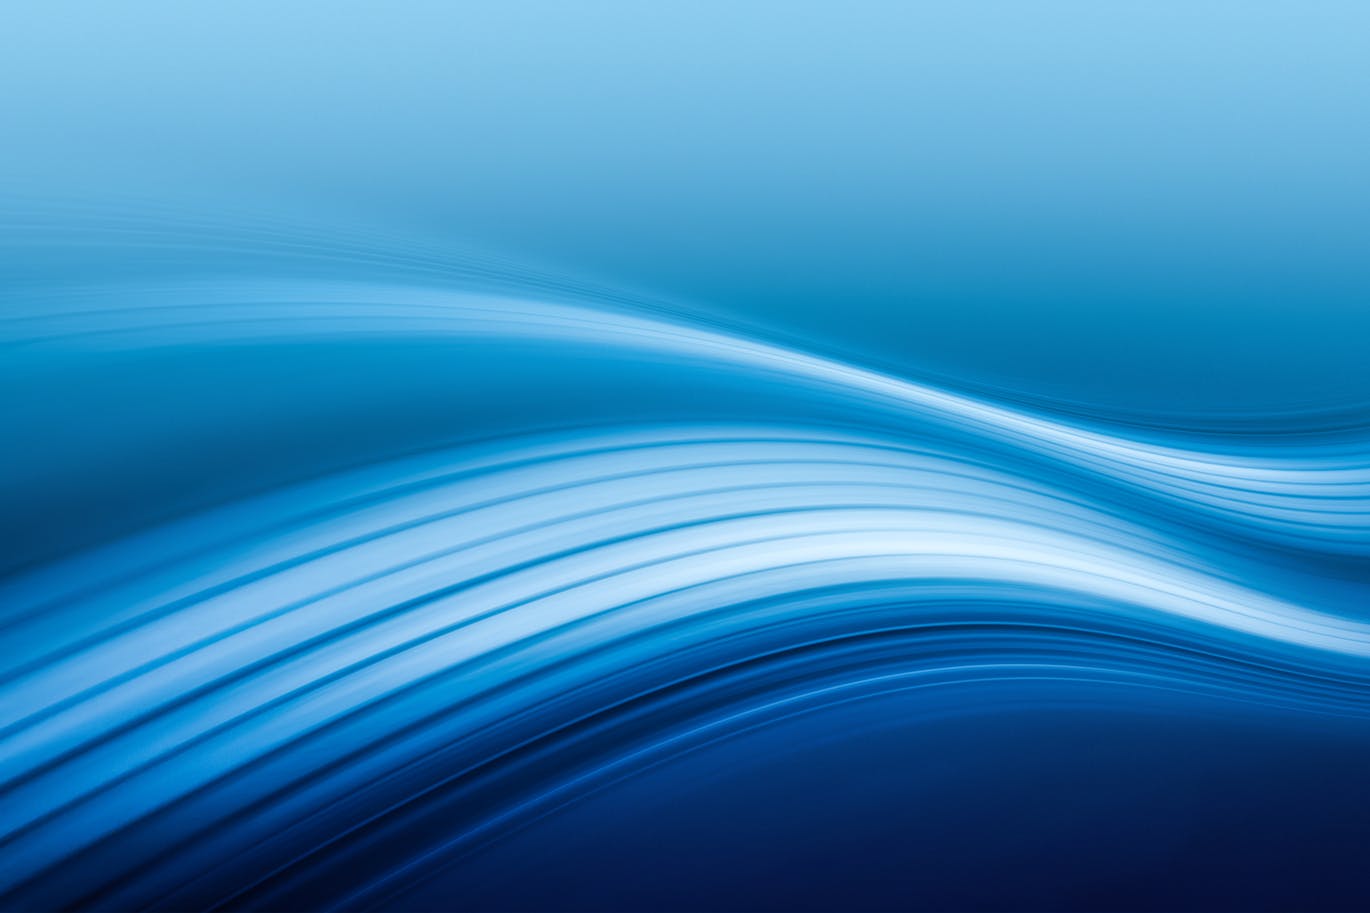 超高清抽象平滑条纹蓝色背景素材v1 abstract blue background插图